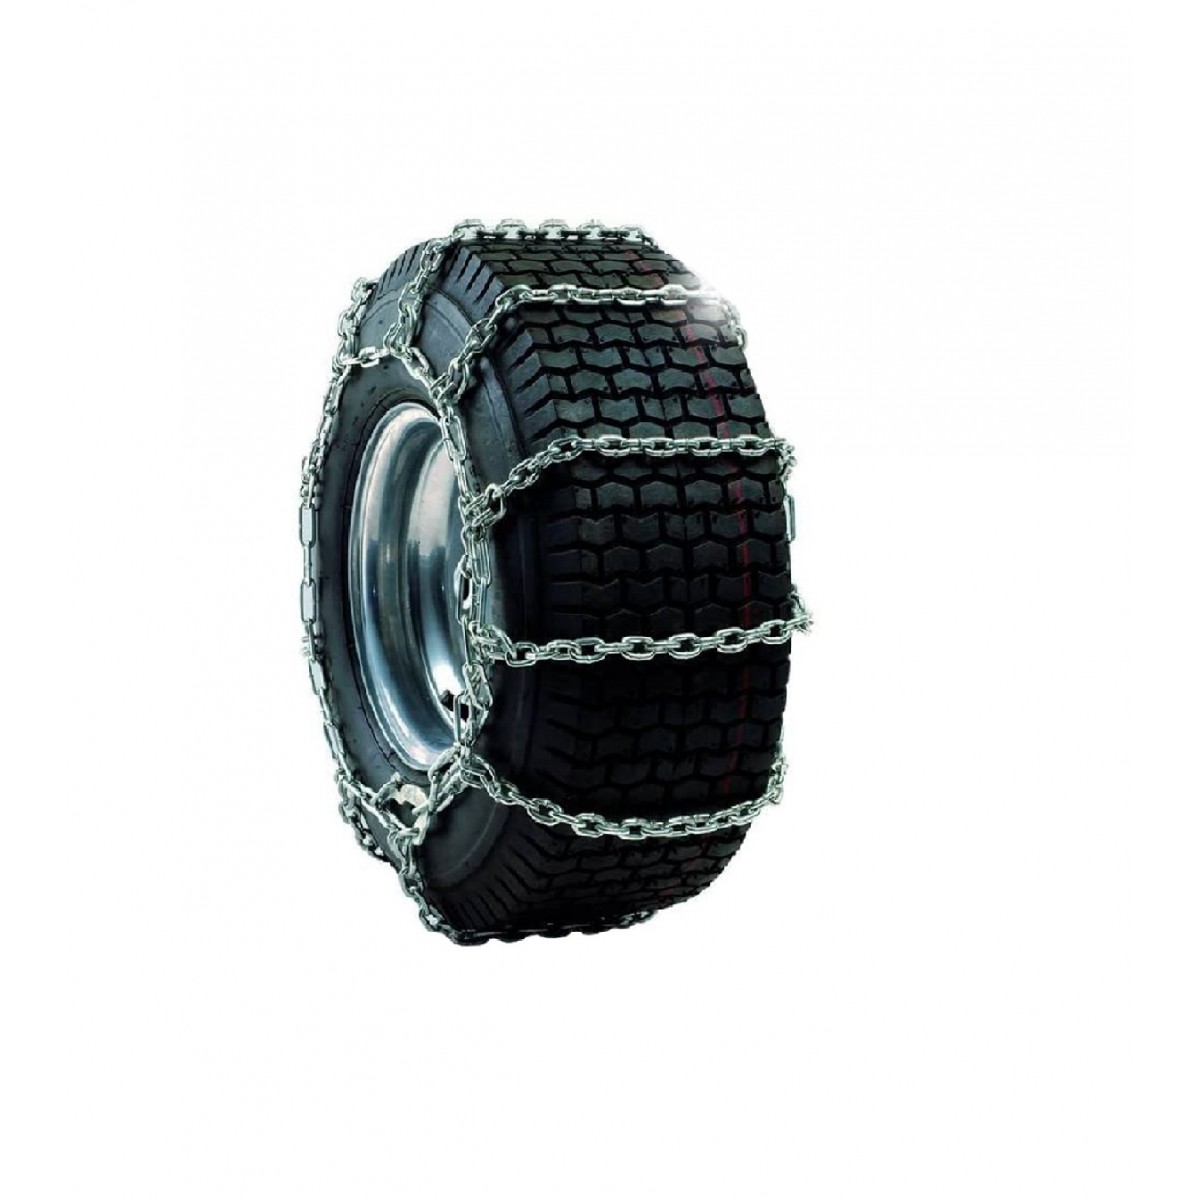 Tire chains 22 x 9.5 / 23 x 9.5 Cub Cadet XT